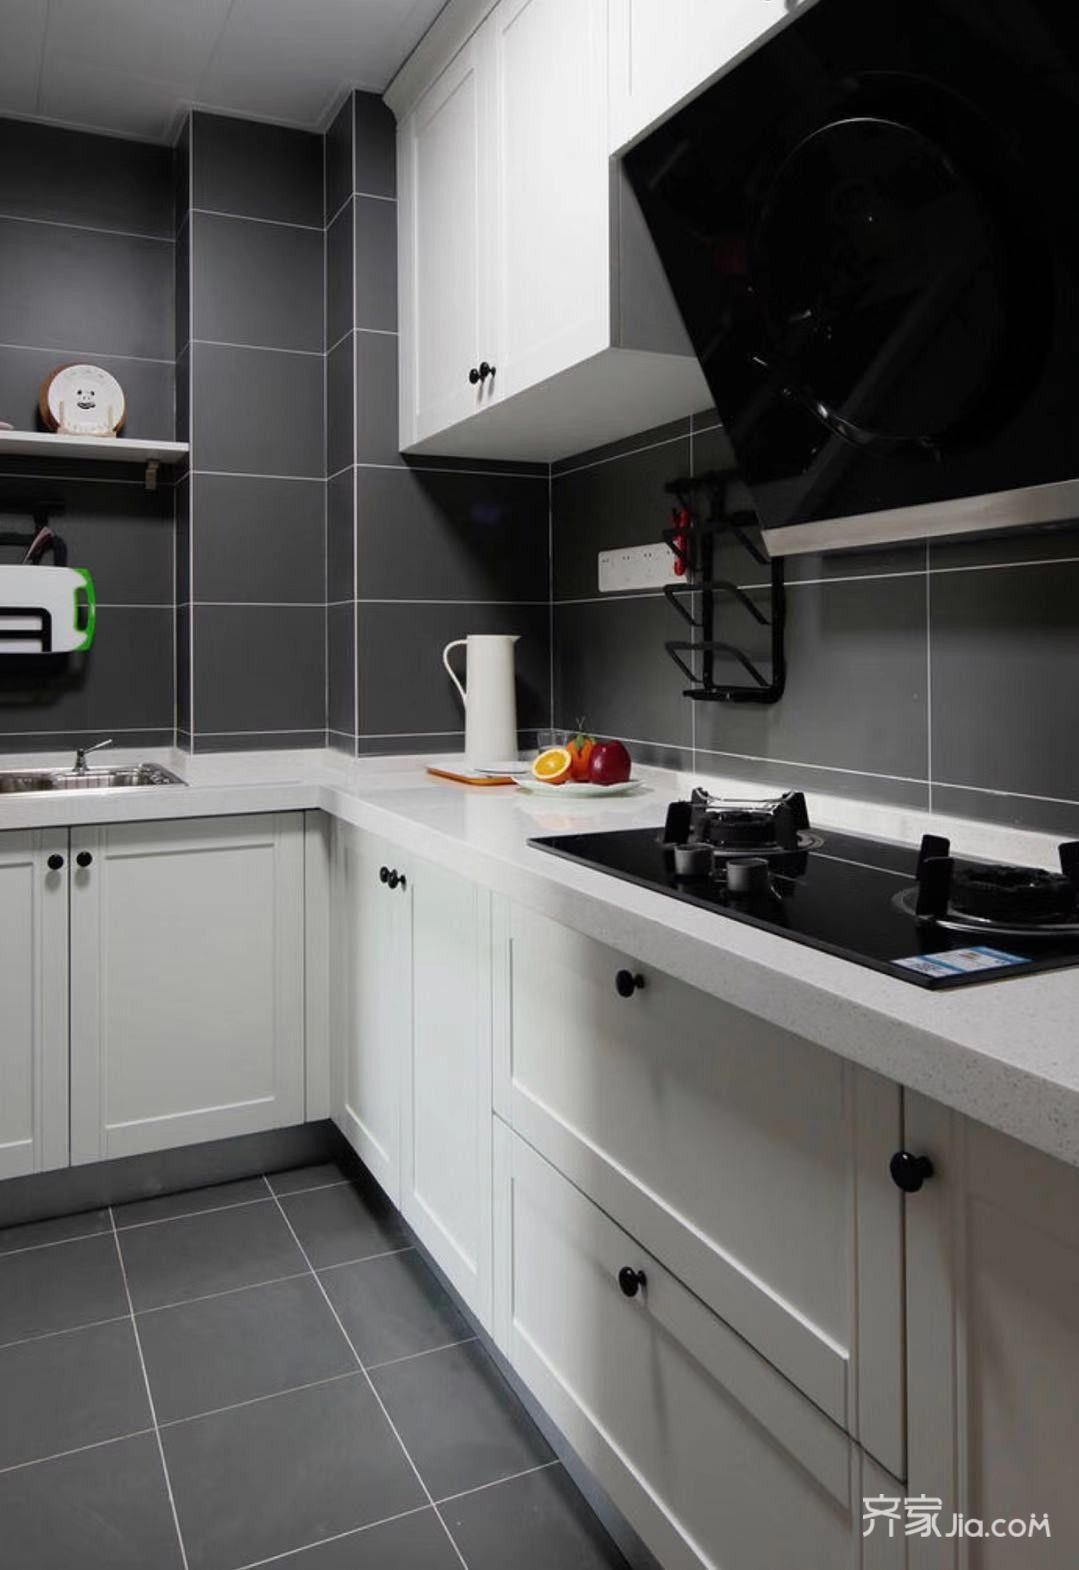 厨房设计的很简洁干净,左边地柜是推了洗手间墙增加的厨房台面.